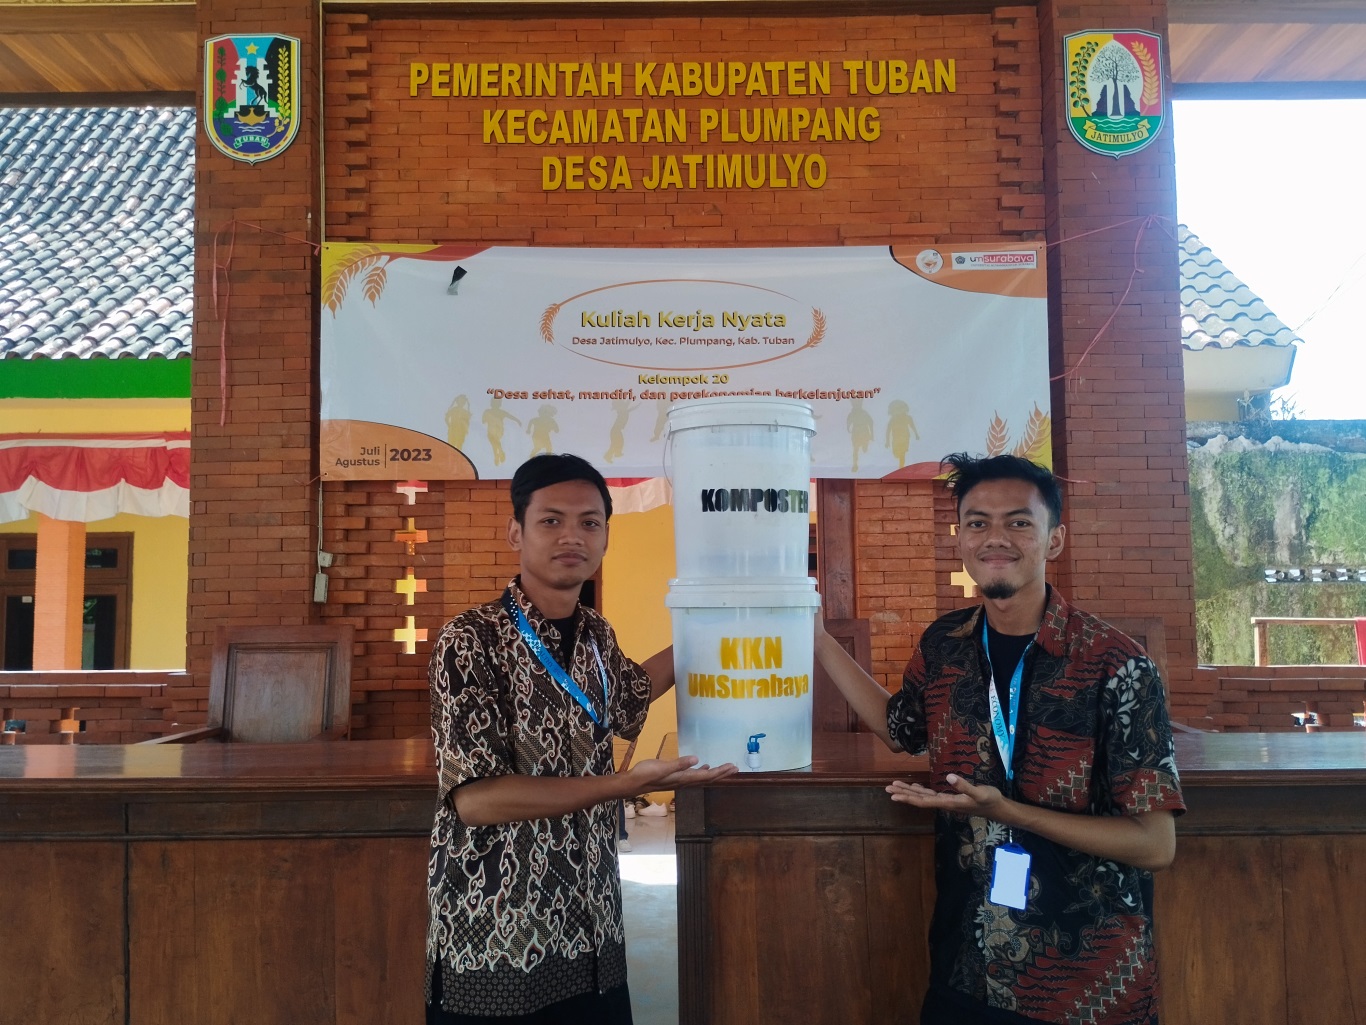 Mahasiswa KKN UM Surabaya Ciptakan Inovasi Komposter Sebagai Alternatif Penggunaan Pupuk Organik.